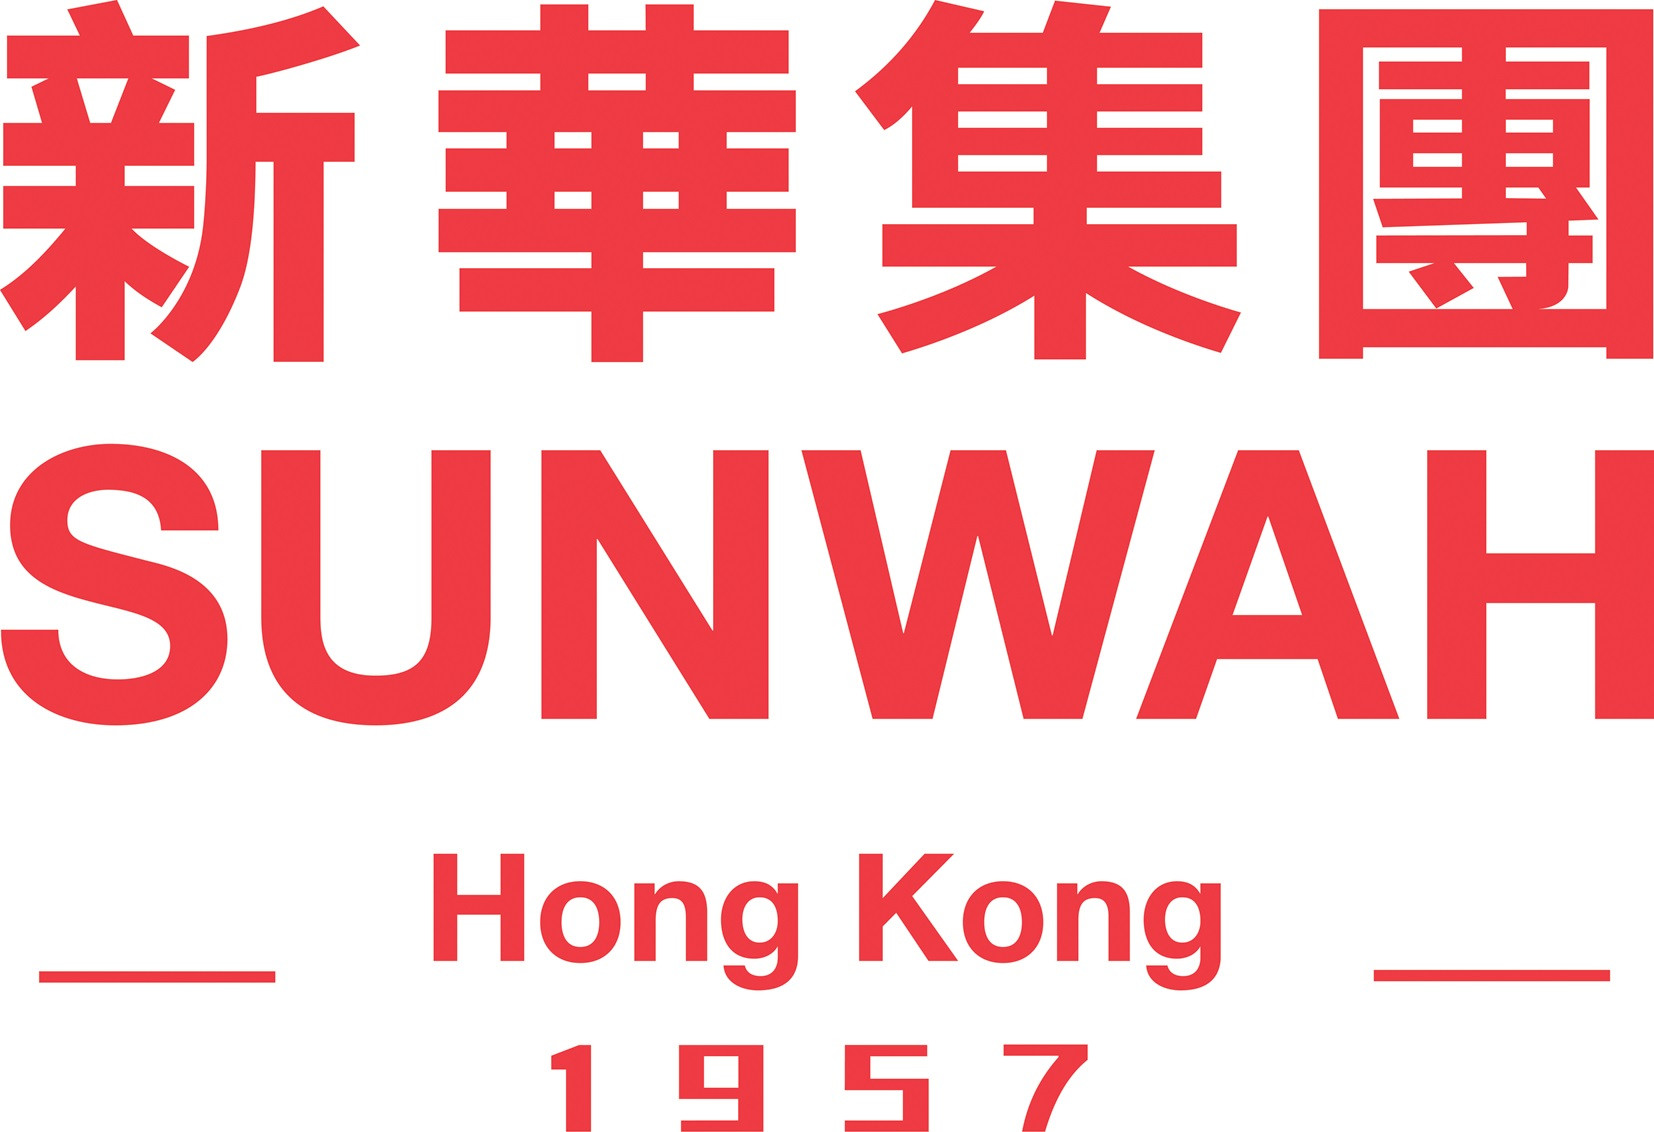 Quỹ Sunwah Hong Kong tặng Việt Nam 5 tỷ VNĐ để phòng, chống COVID-19